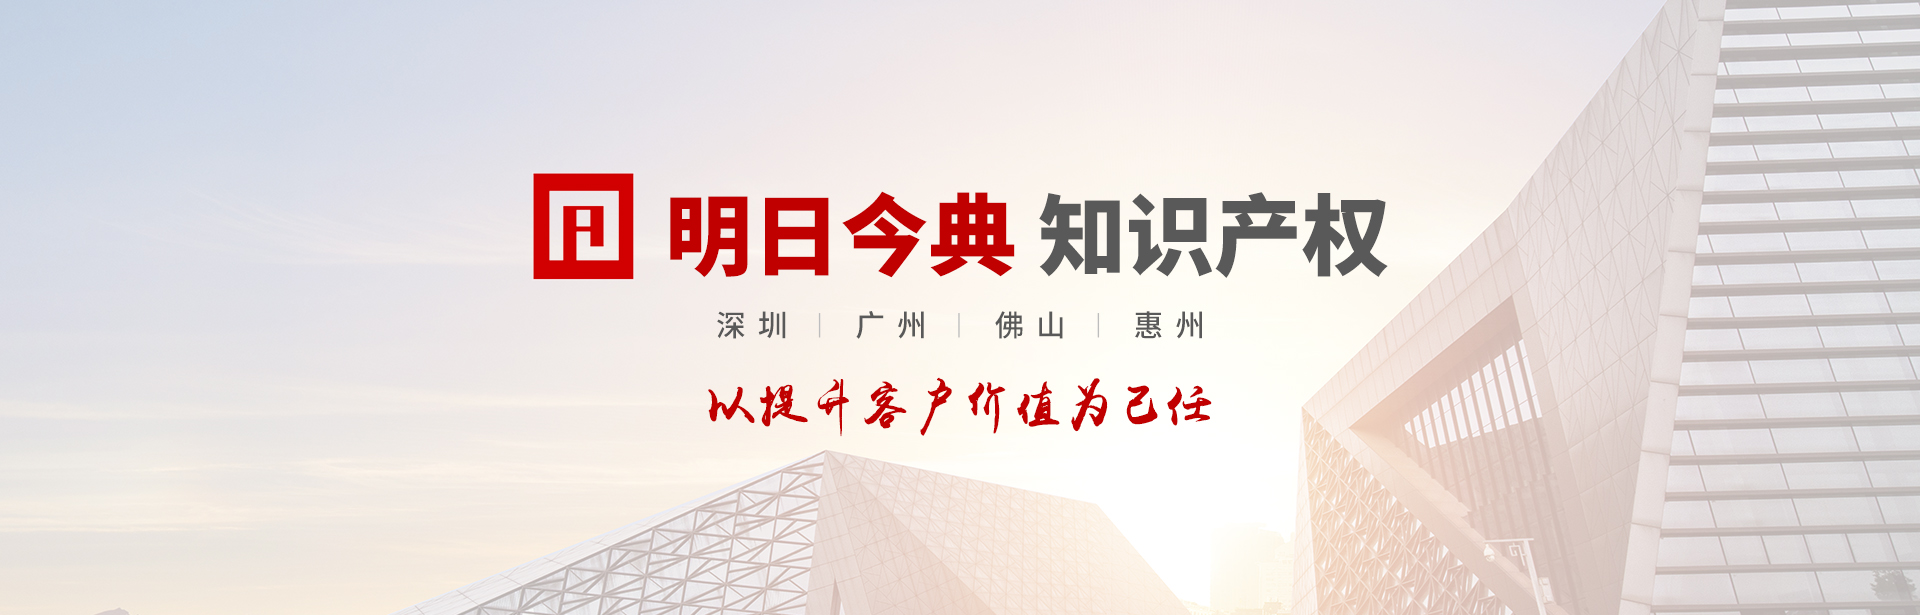 深圳市宝安区科技创新局关于开展宝安区国家和广东省科技获奖奖励项目申报的通知